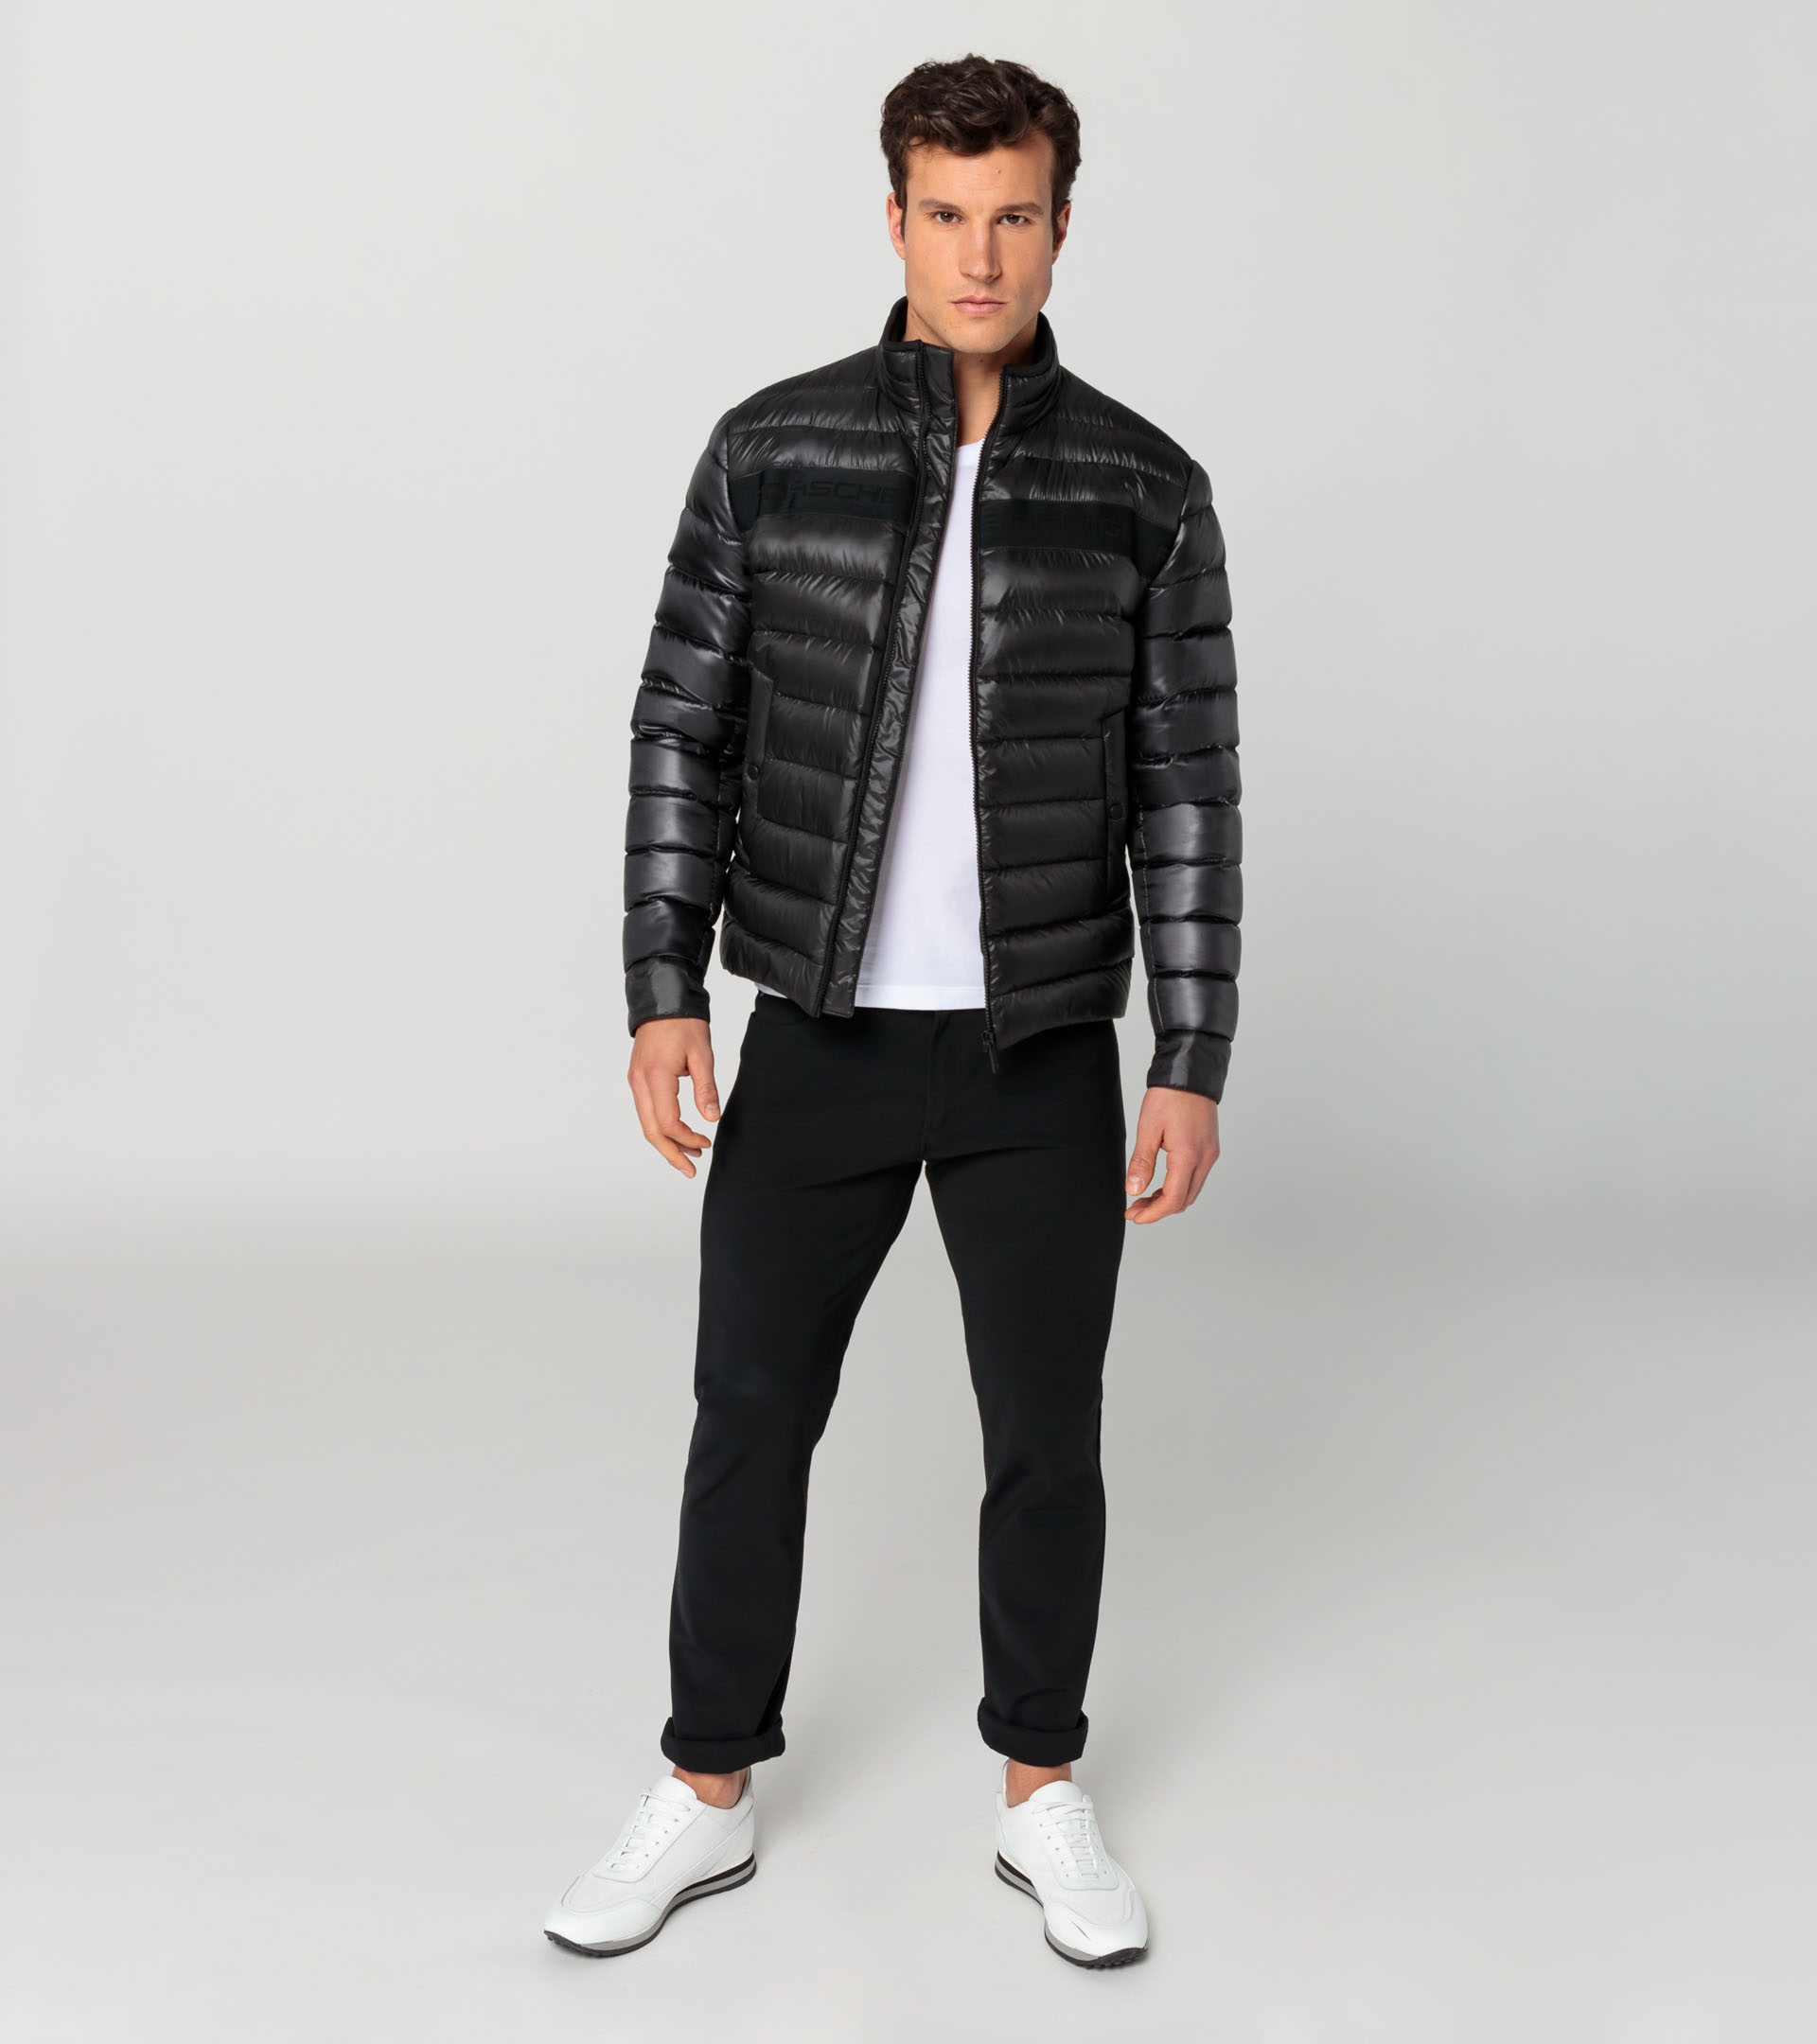 Lightweight puffer jacket - Designer Men's Jackets & Coats | Porsche ...